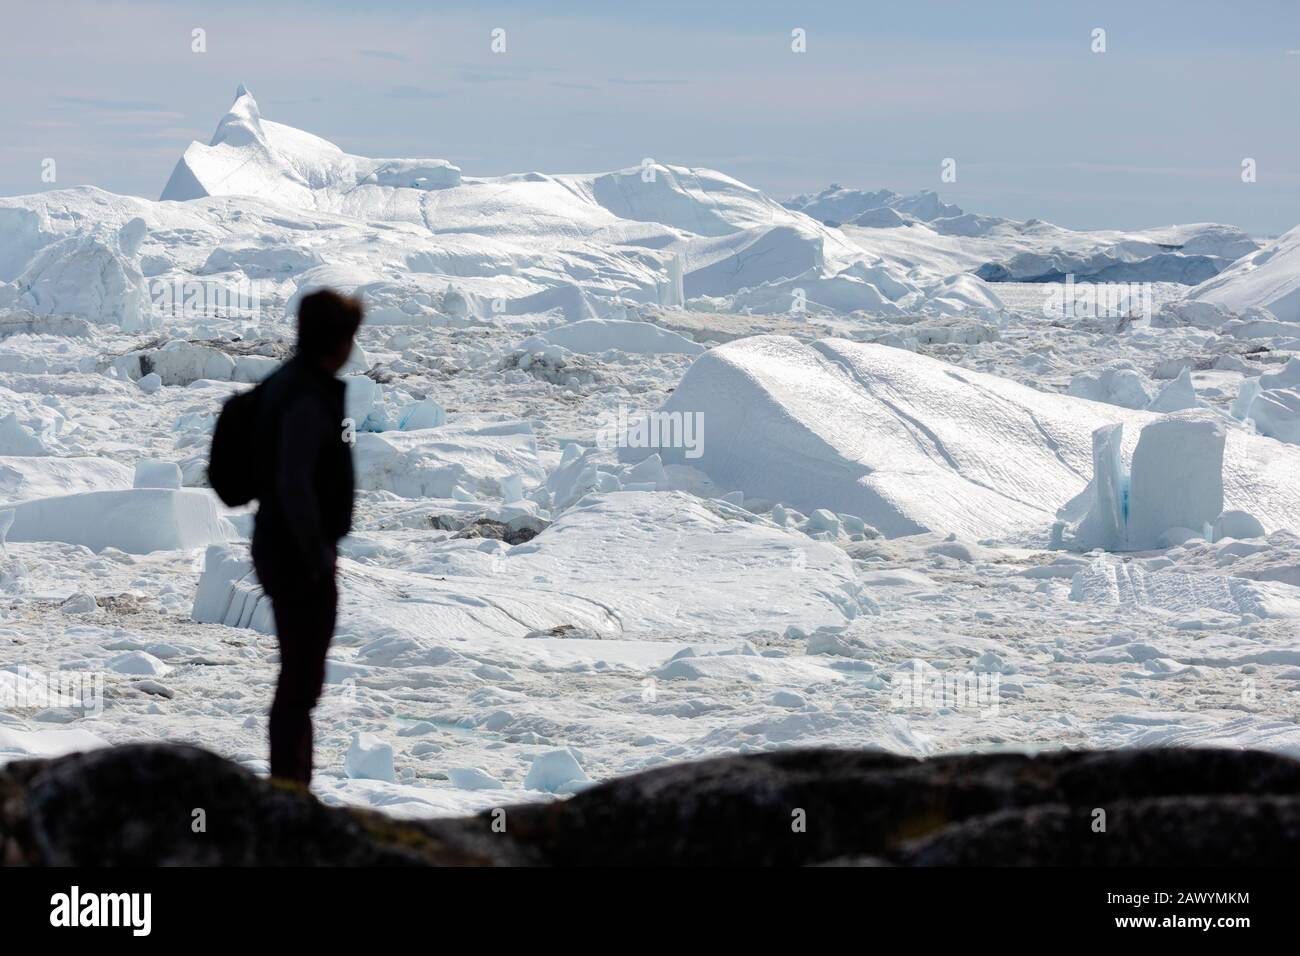 Silhouette homme regardant la glace glaciale ensoleillée fondre Groenland Banque D'Images